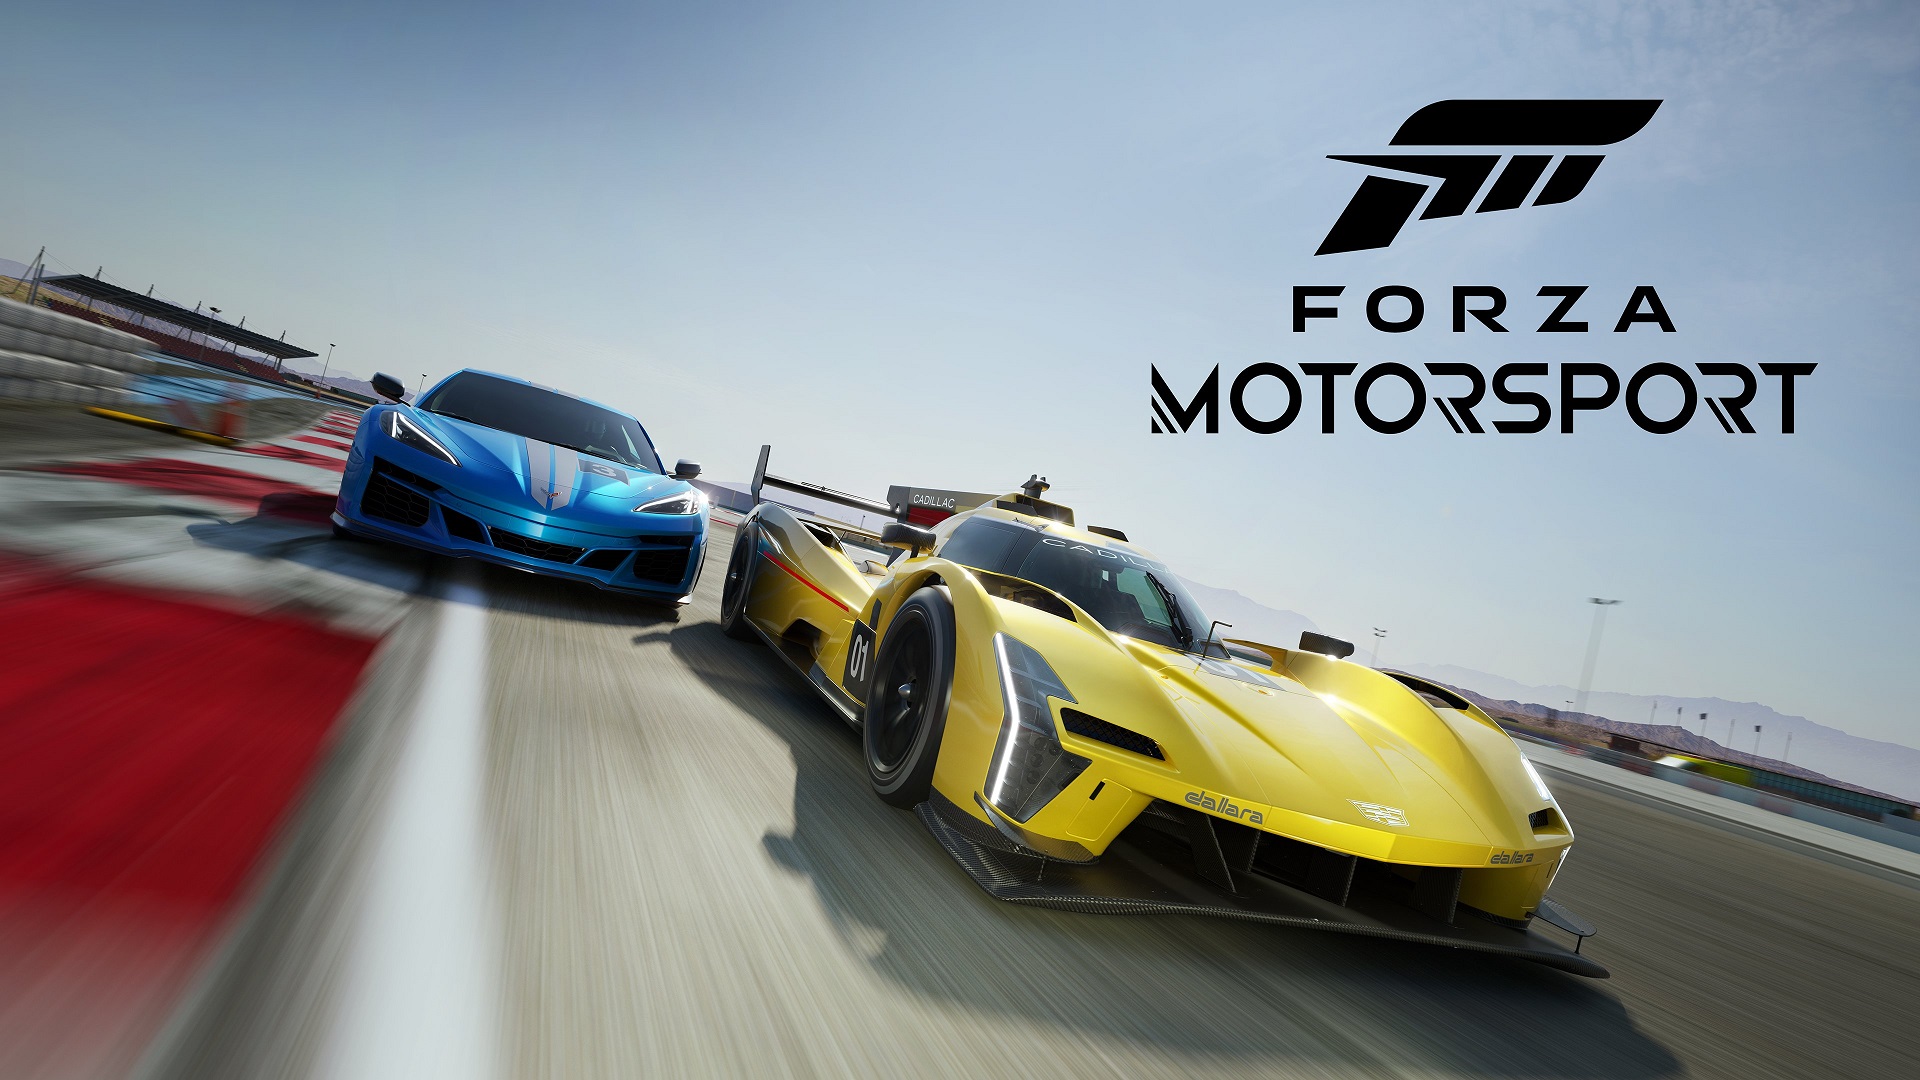 Forza Horizon 5 - Requisitos Mínimos (Actualizados) y Recomendados de PC